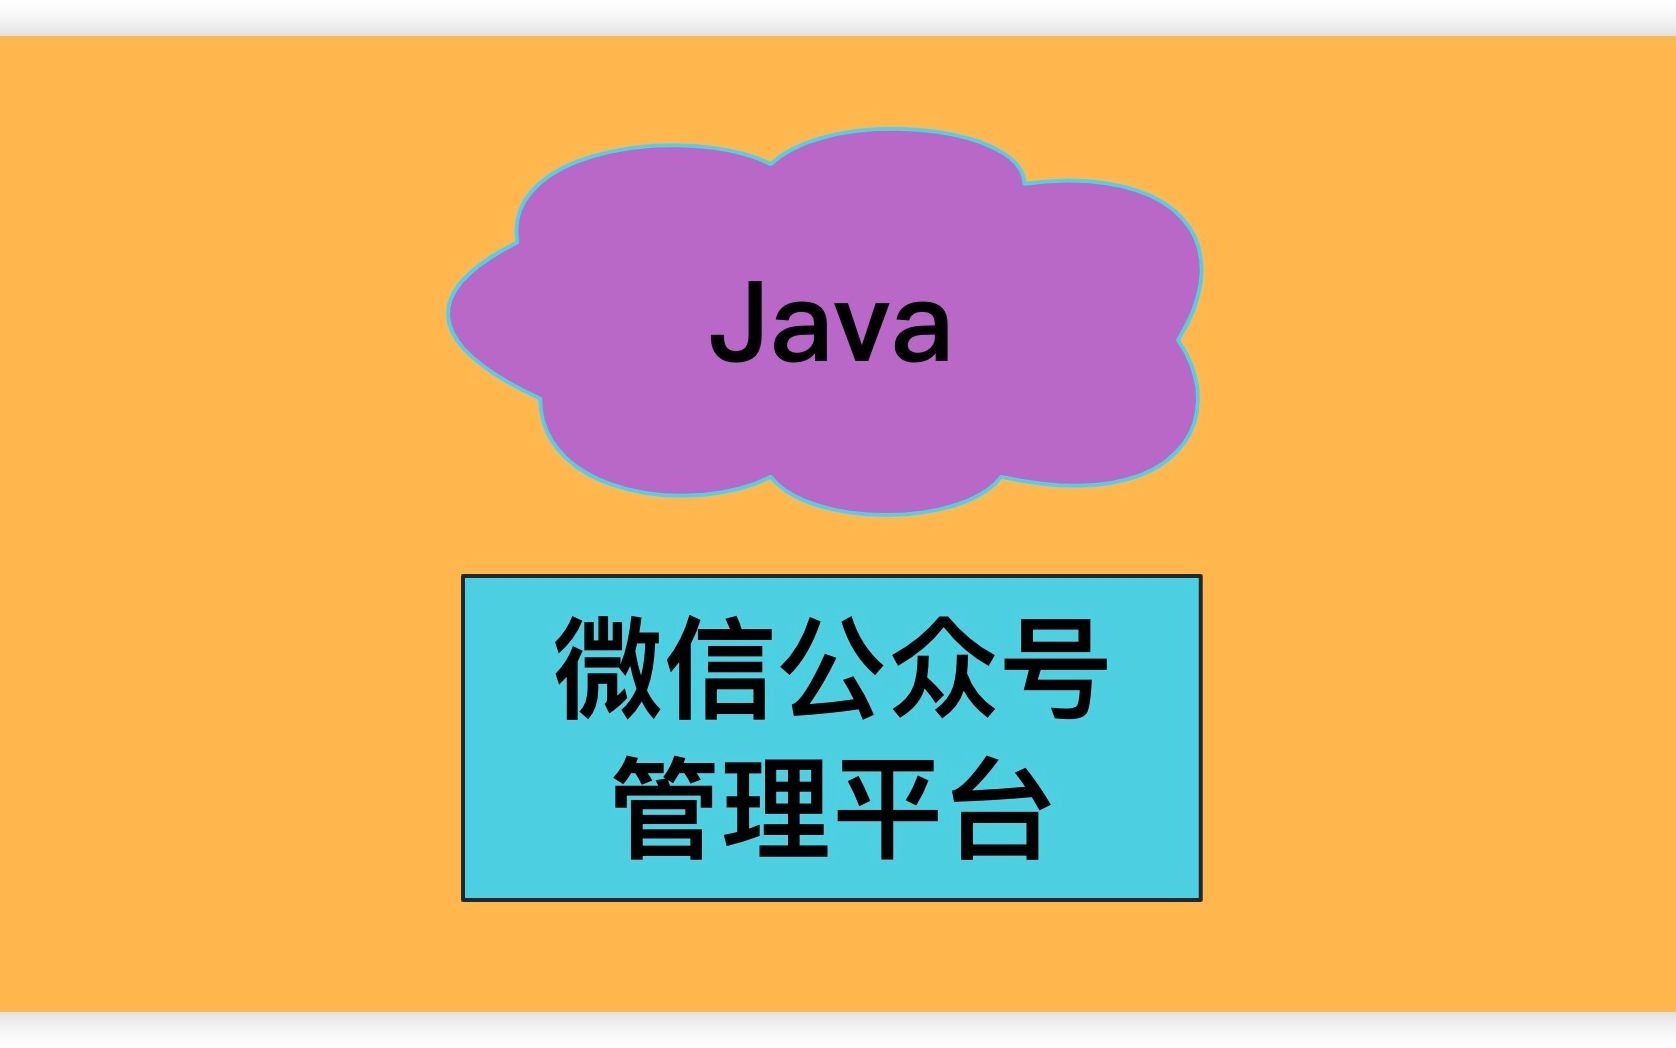 Java项目-微信公众号管理平台